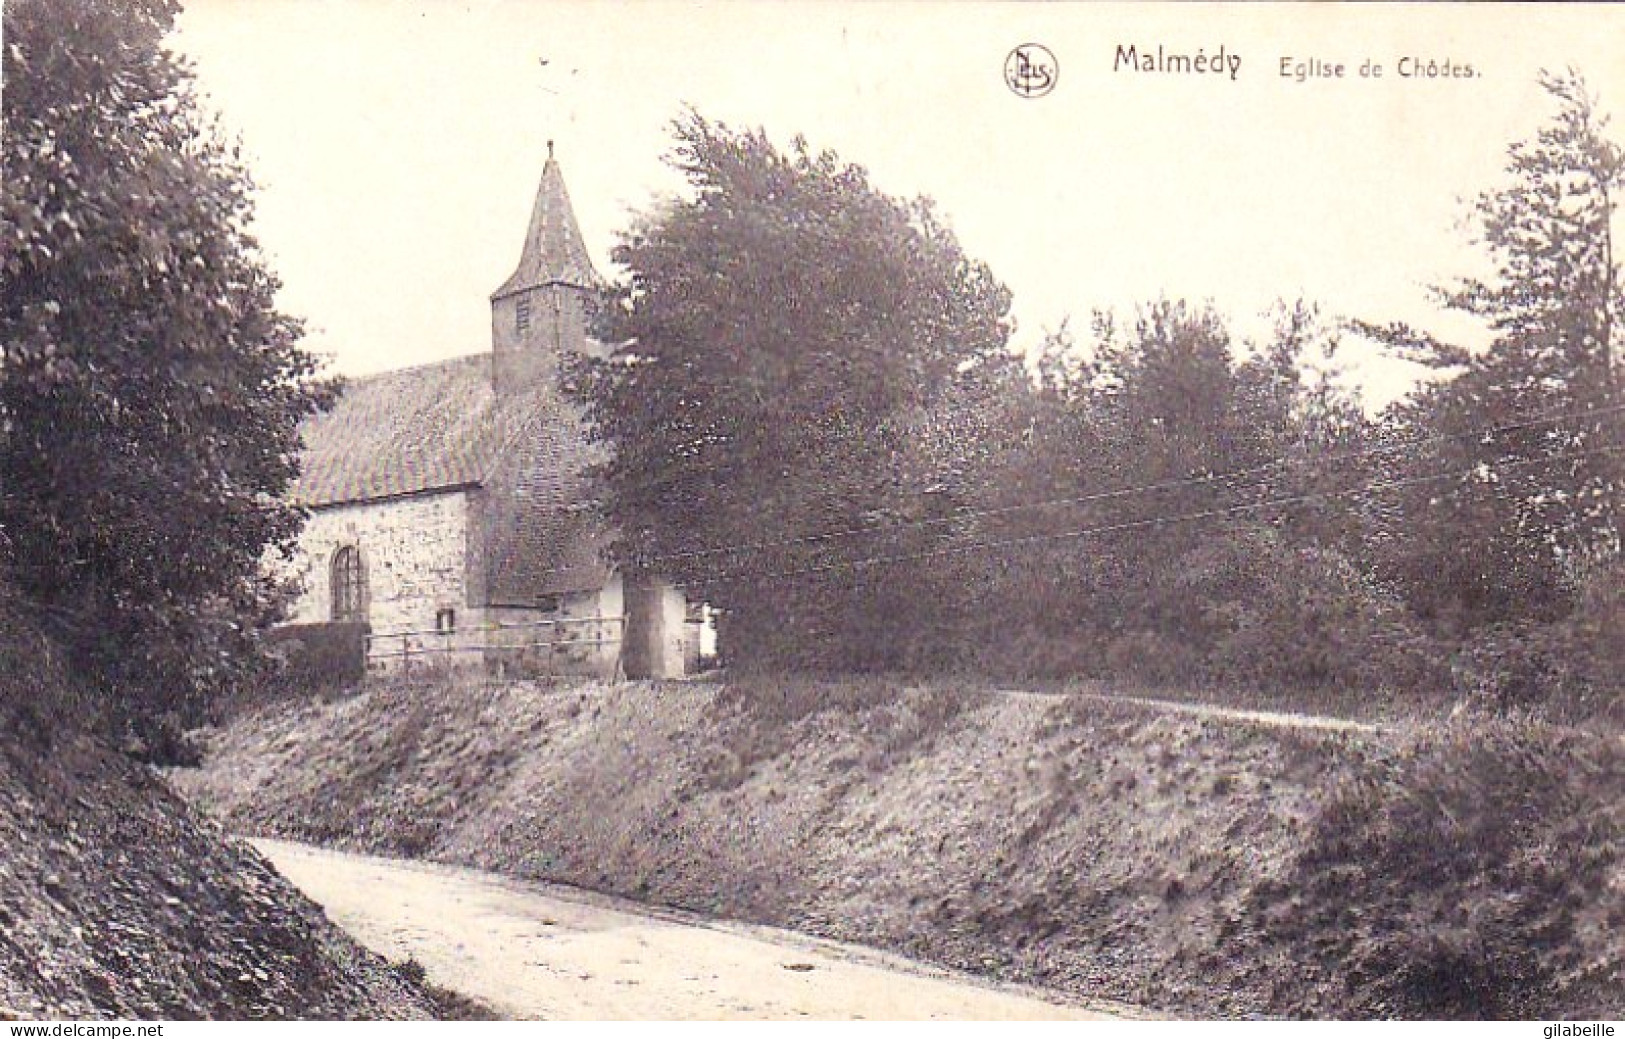  Malmedy - Eglise De Chodes - Malmedy